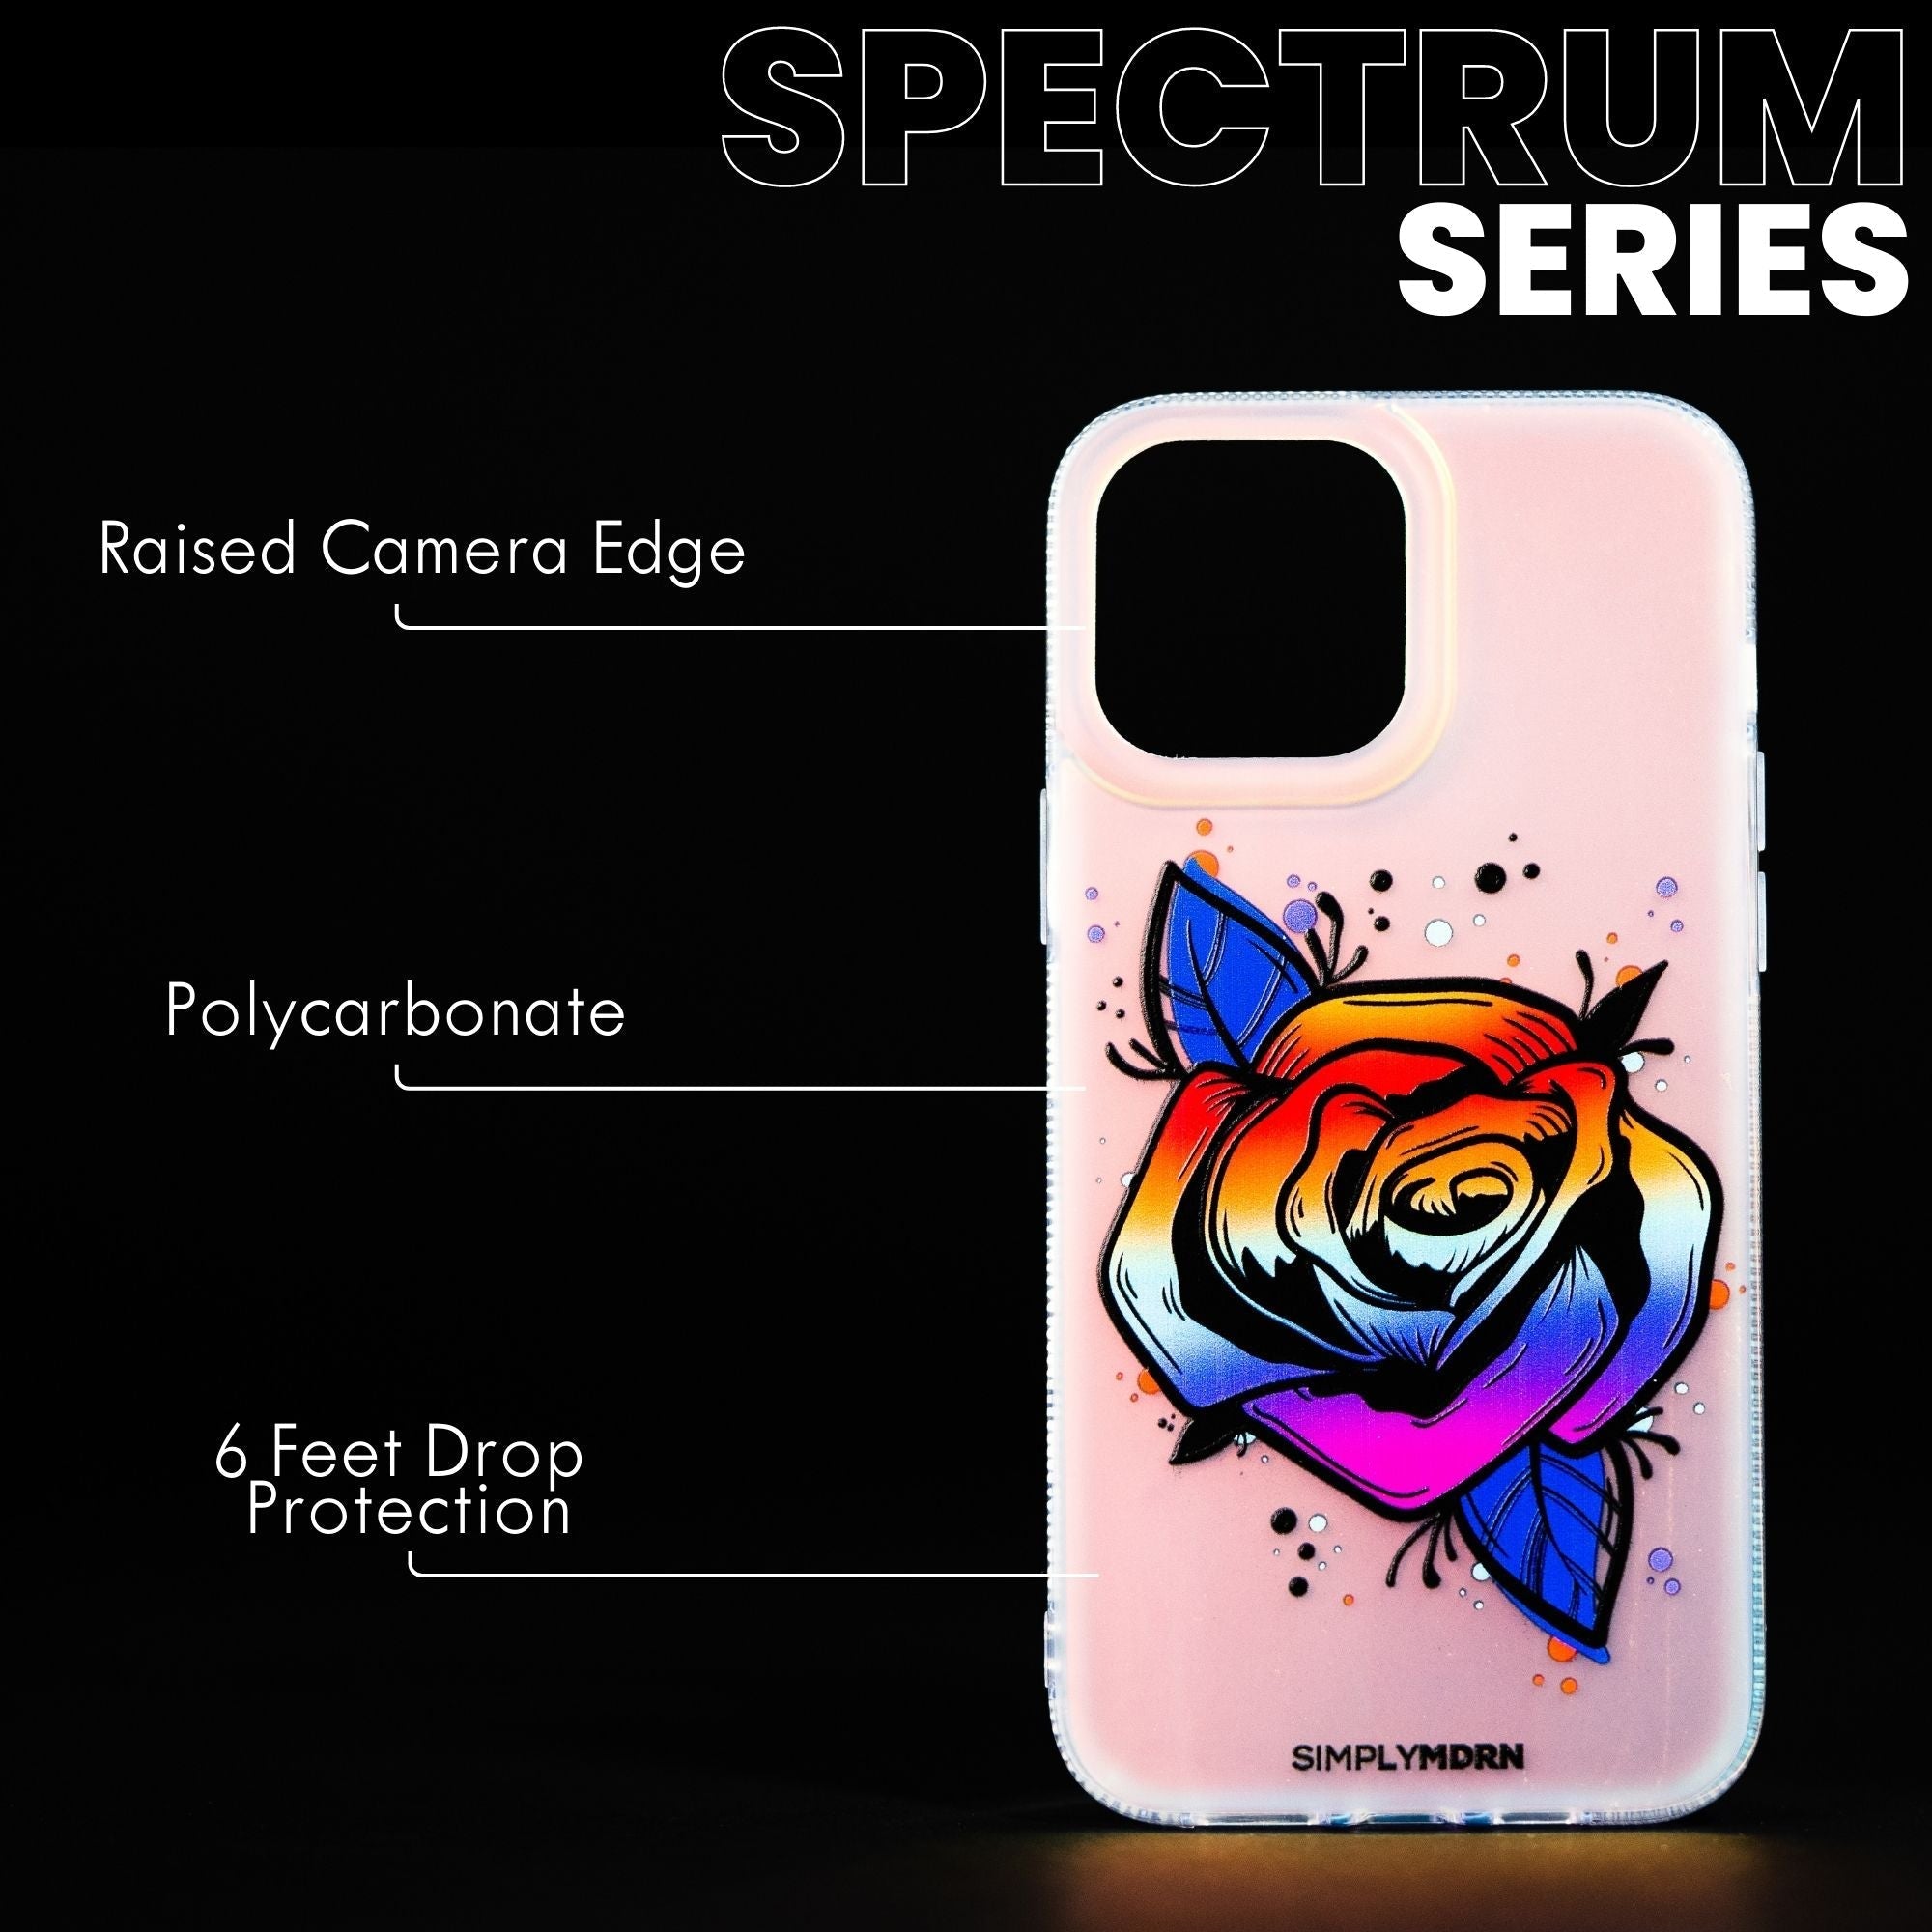 SPECTRUM BLOOM Spectrum iPhone Case